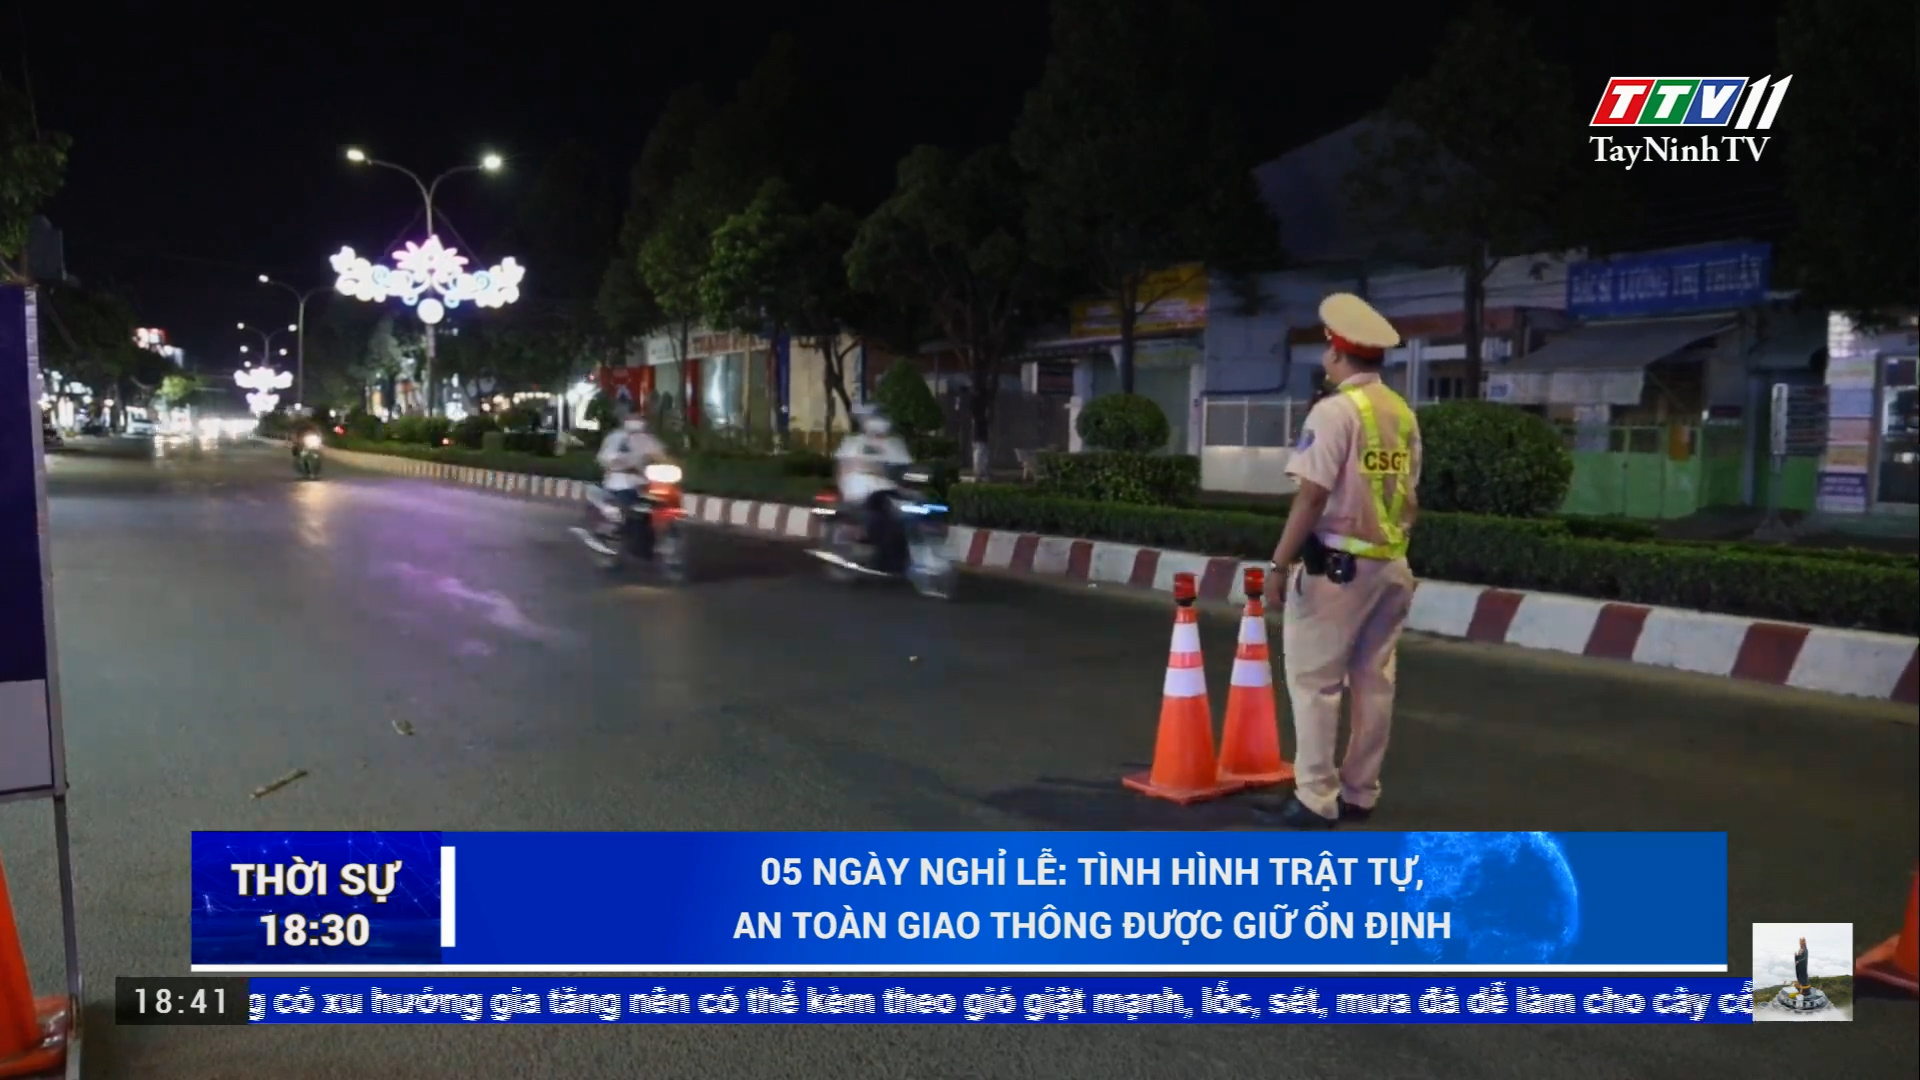 05 ngày nghỉ lễ: Tình hình trật tự, an toàn giao thông được giữ ổn định | TayNinhTV